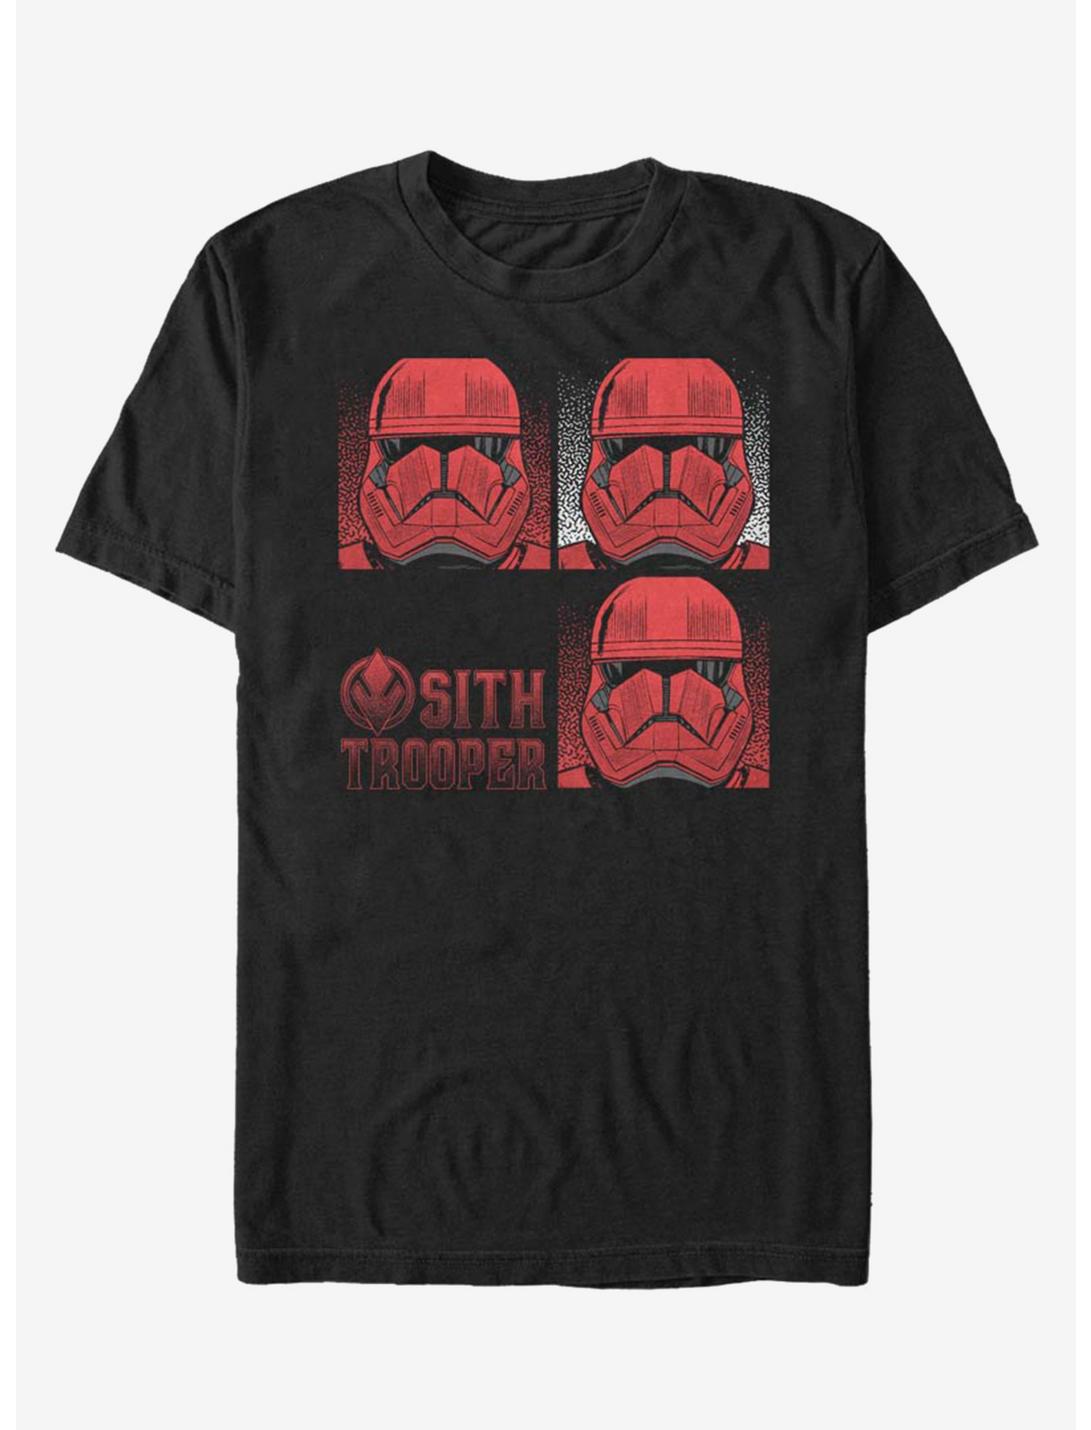 Star Wars Episode IX The Rise Of Skywalker Sith Trooper T-Shirt, BLACK, hi-res